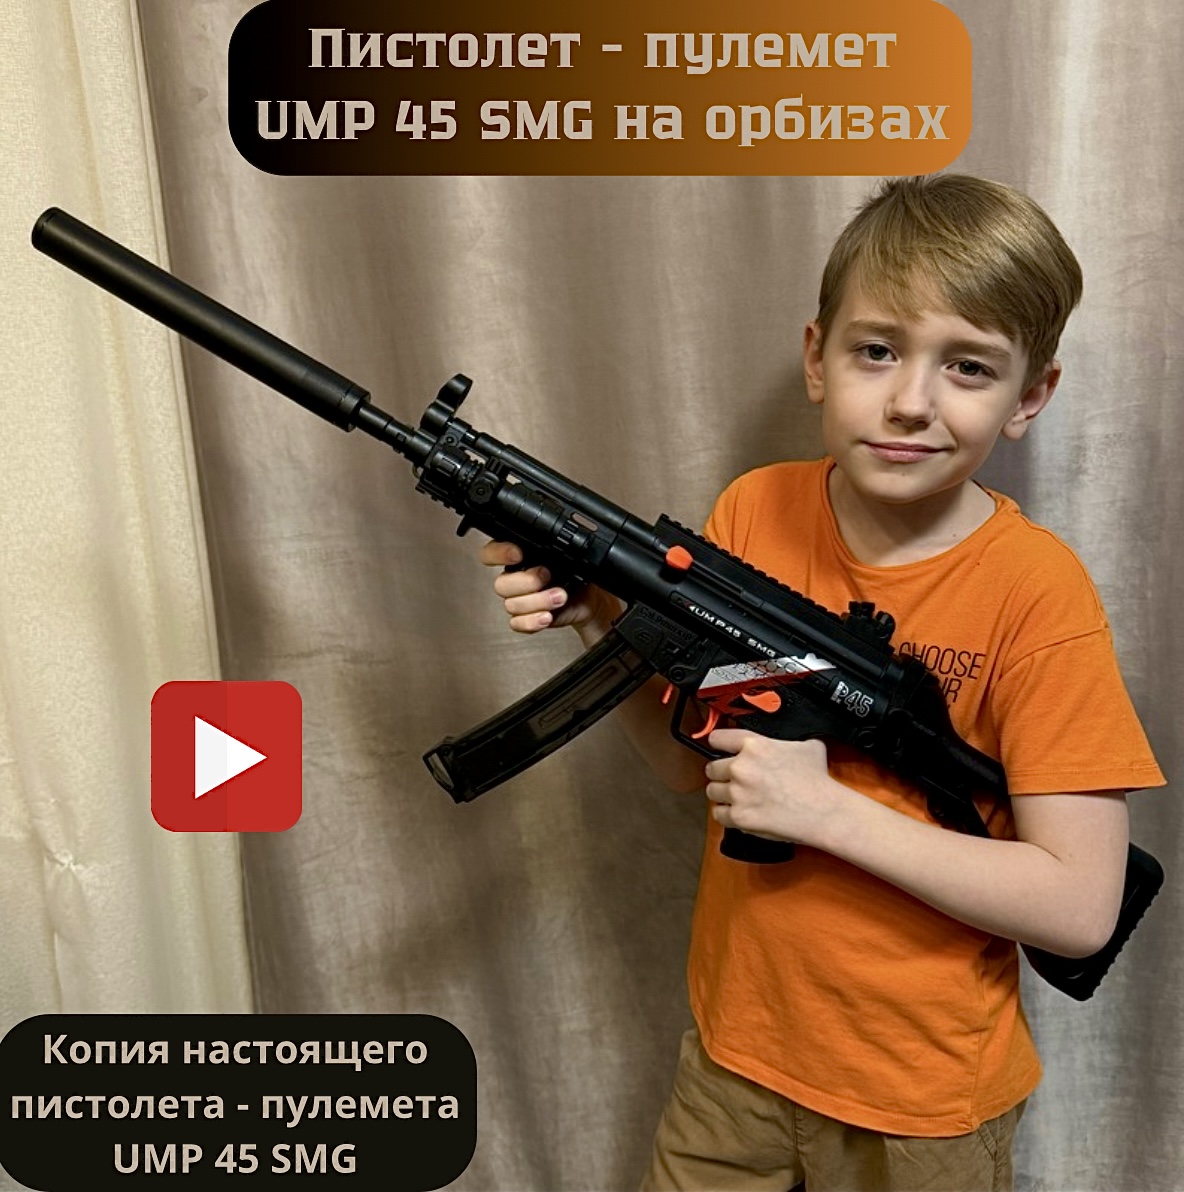 Пистолет-пулемет детский игровой RanCap UMP 45 SMG с орбизами (игрушка)